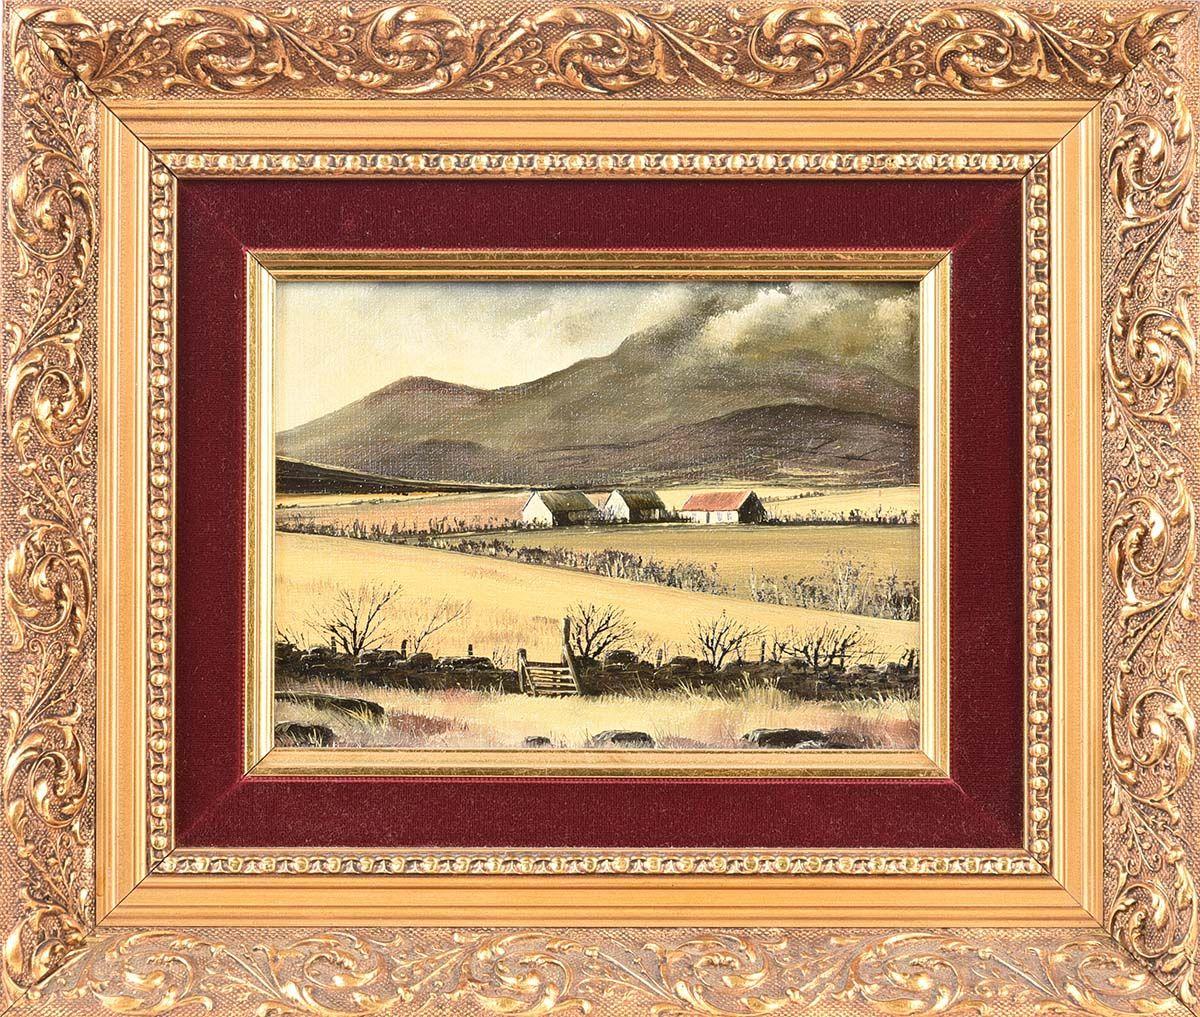 Petite peinture à l'huile représentant des cottages dans les Mournes en Irlande, réalisée par l'artiste contemporain Derek Quann. 

L'œuvre d'art mesure 8 x 6 pouces 
Le cadre mesure 13 x 11 pouces (cadre doré orné d'un insert en velours bordeaux,